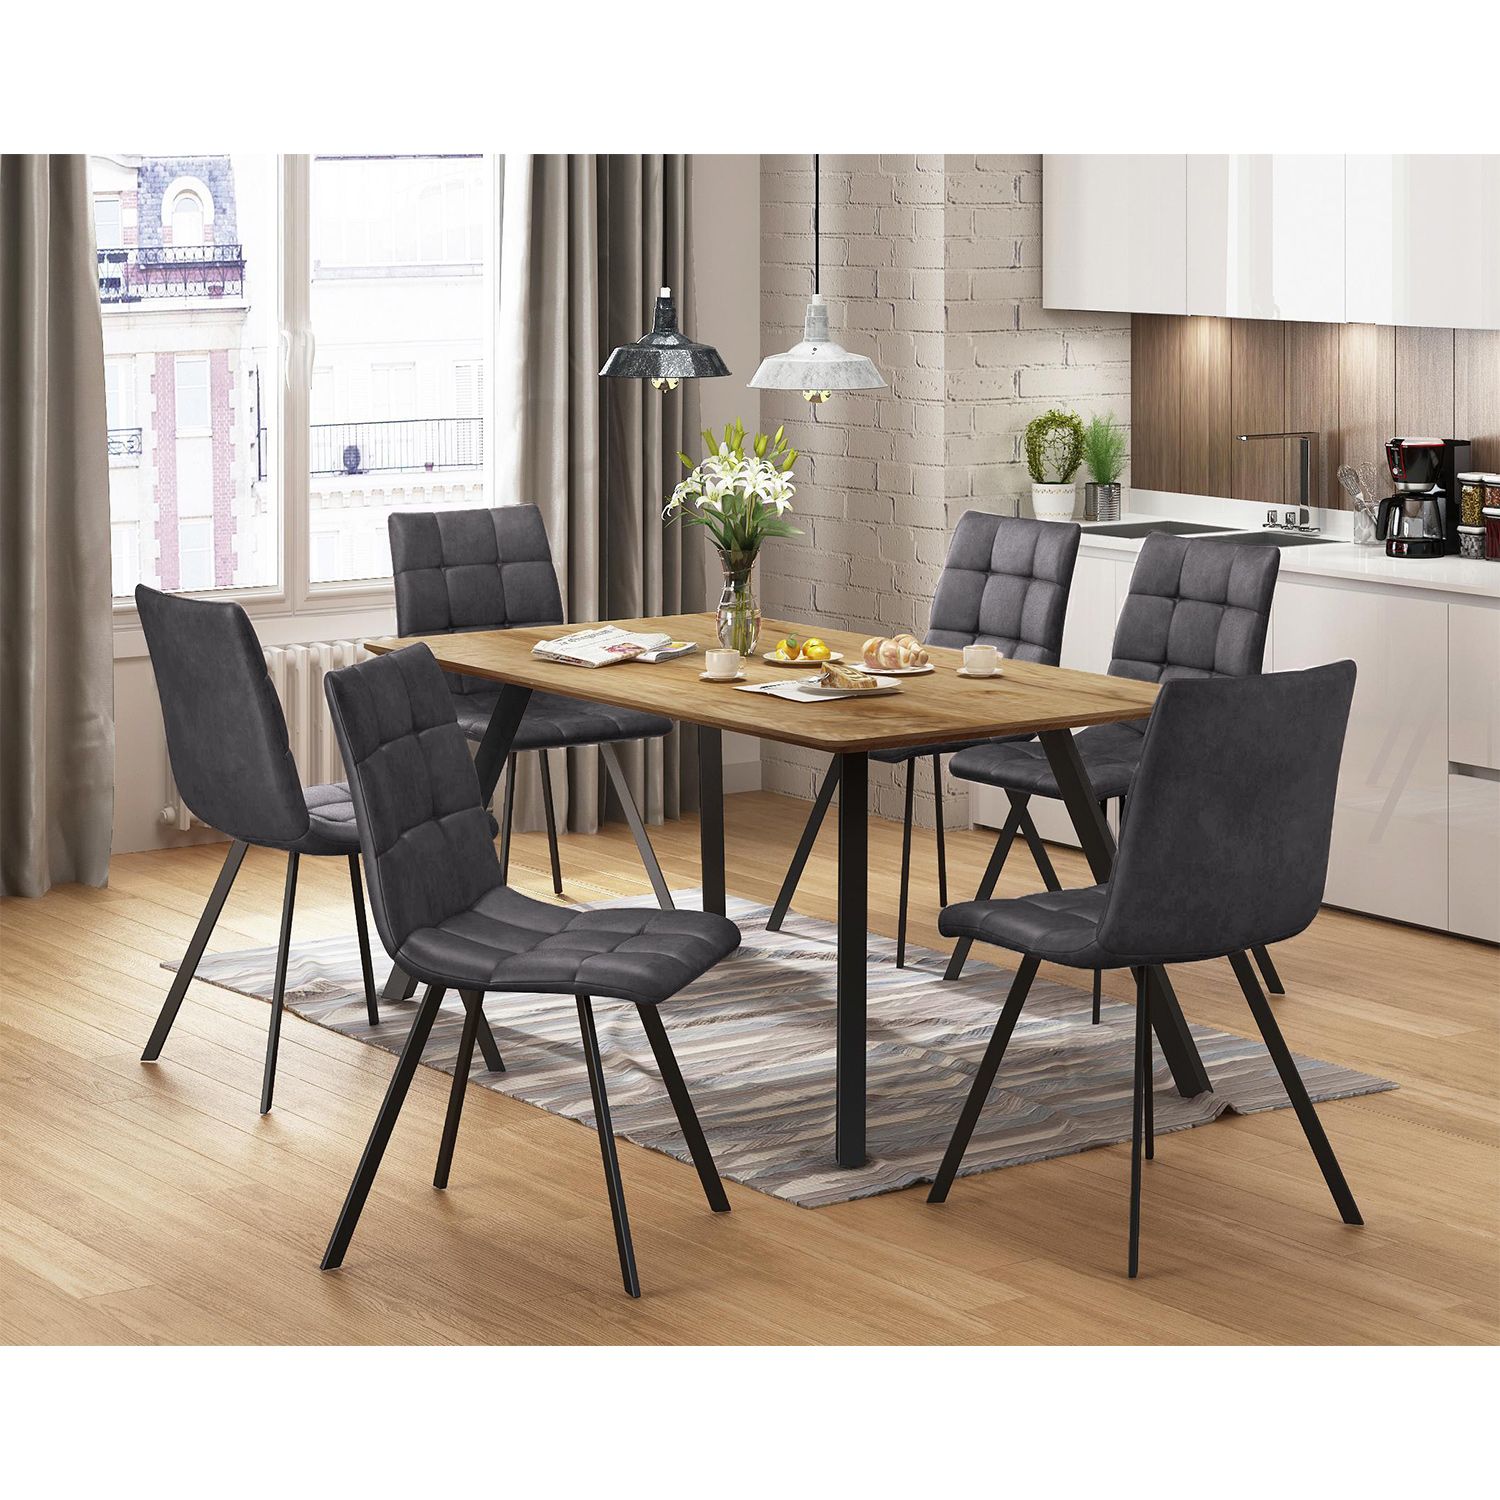 Jídelní stůl BERGEN dub + 6 židlí BERGEN šedé mikrovlákno - IDEA nábytek